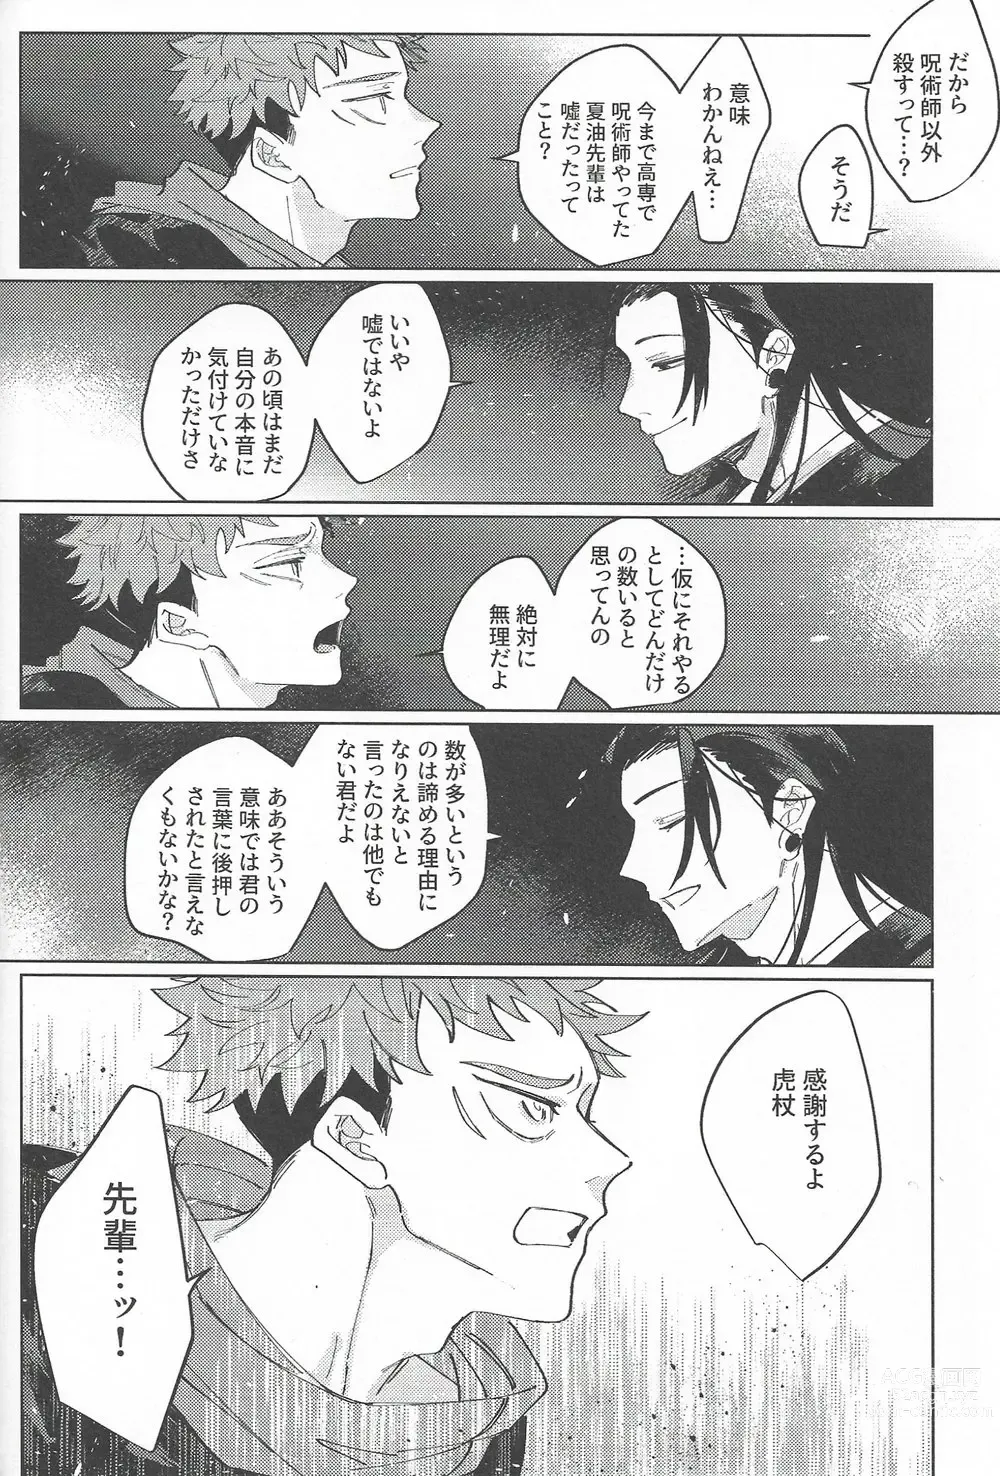 Page 59 of doujinshi Rakuen no Niwa